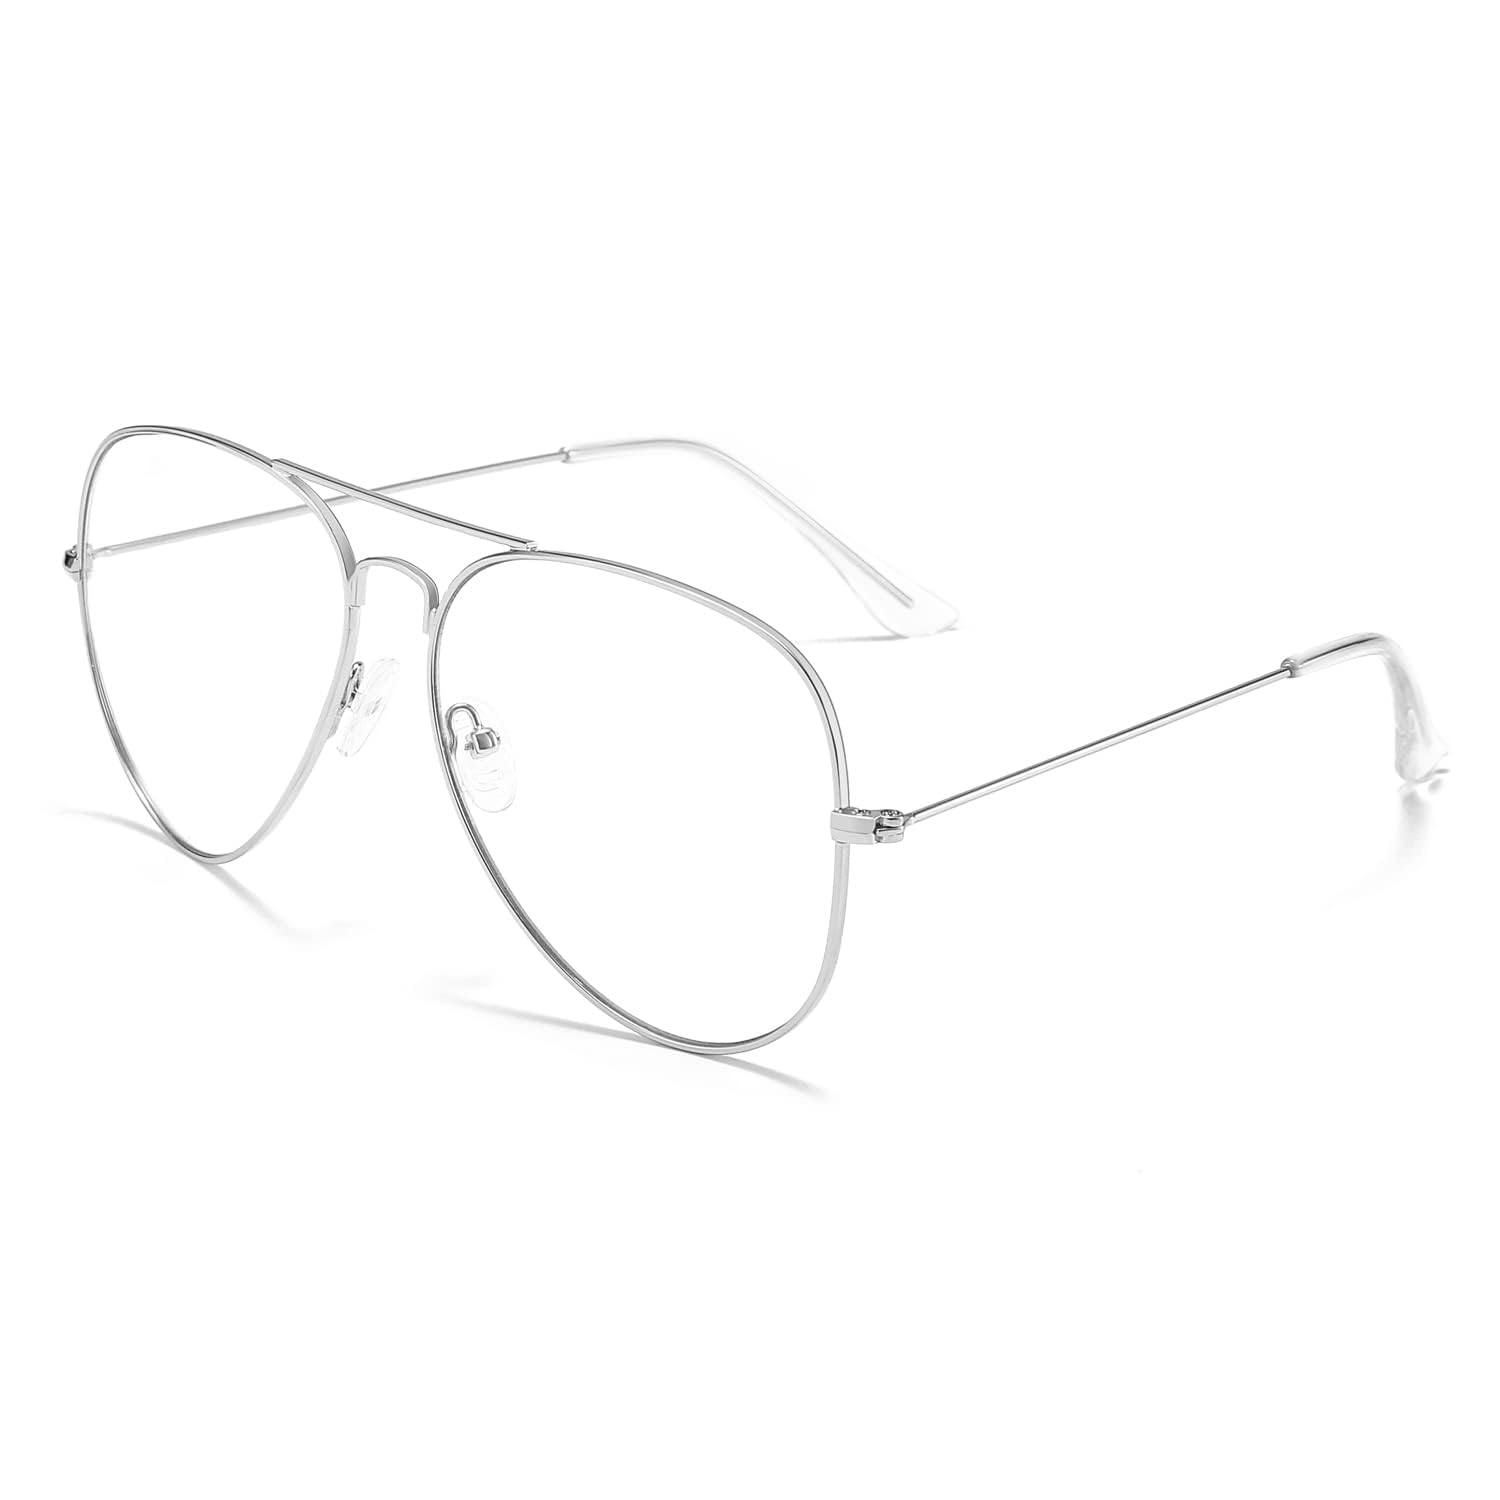 [Dollger] 伊達メガネ ファッションメガネ 度なし 軽量 UVカット 紫外線カット Aviatorメガネ 眼鏡 透明レンズ 金属フレーム 小顔効果 レトロスタイル おしゃれ レディース メンズ シルバー